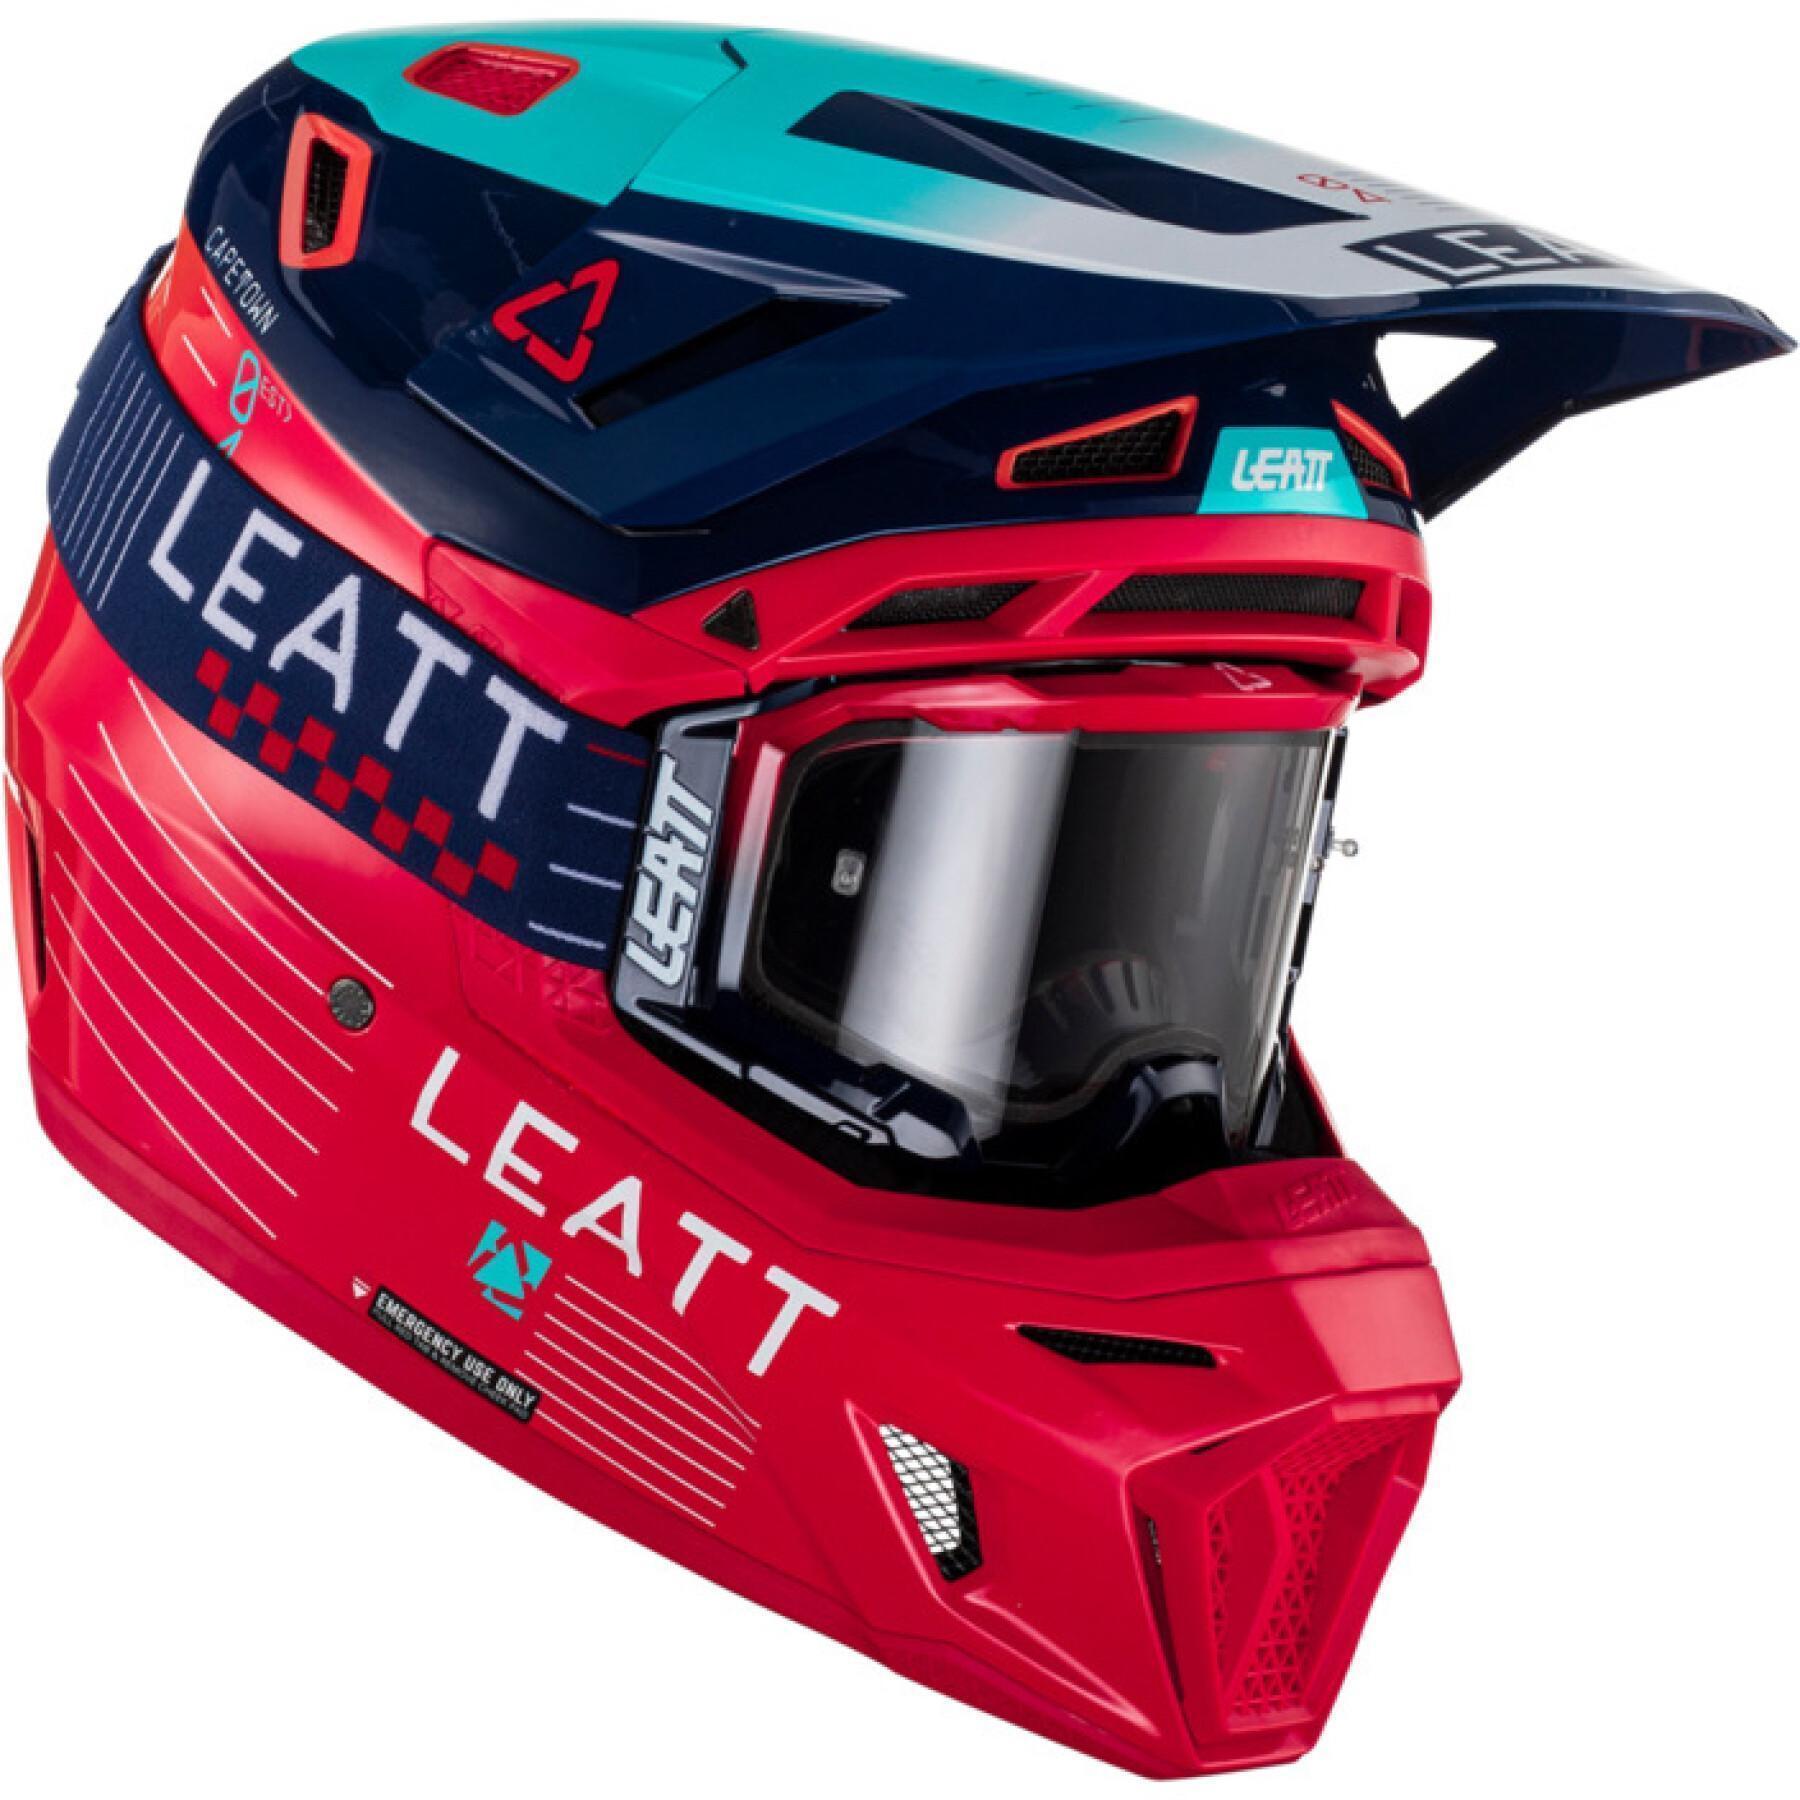 Motocrosshjälmsats med skyddsglasögon Leatt 8.5 23